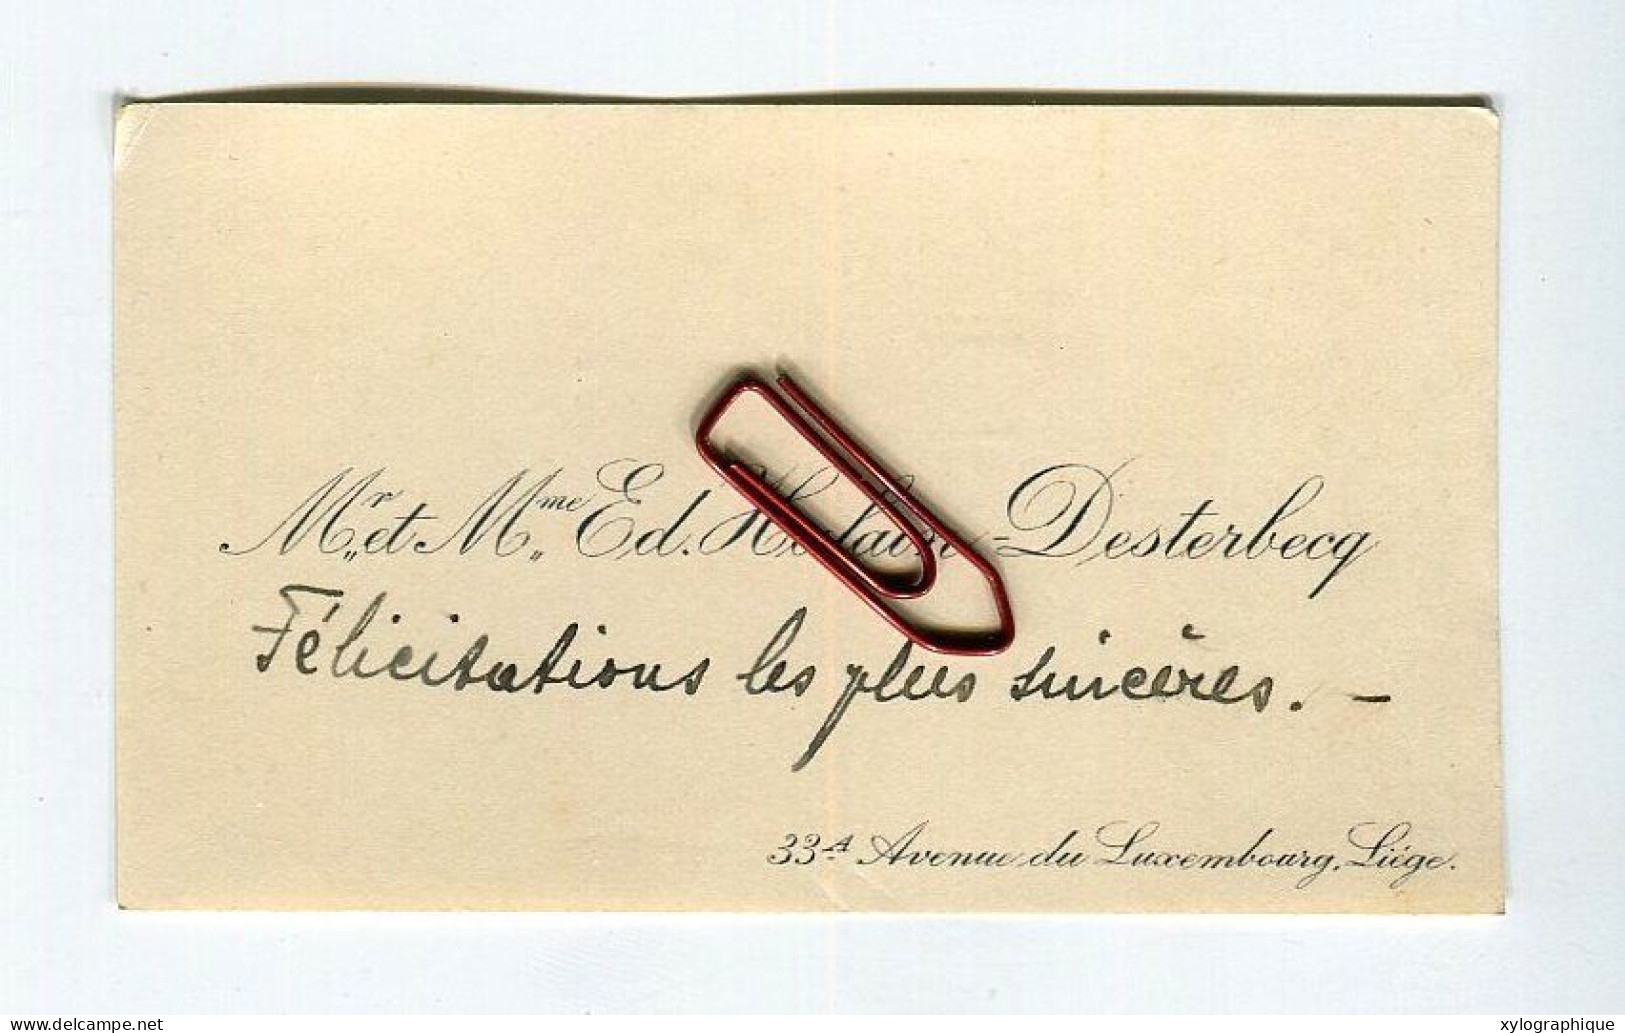 LIEGE - Carte De Visite Ca. 1930, Ed. Halain Desterbecq, Avenue Du Luxembourg, à Famille Gérardy Warland - Visitekaartjes